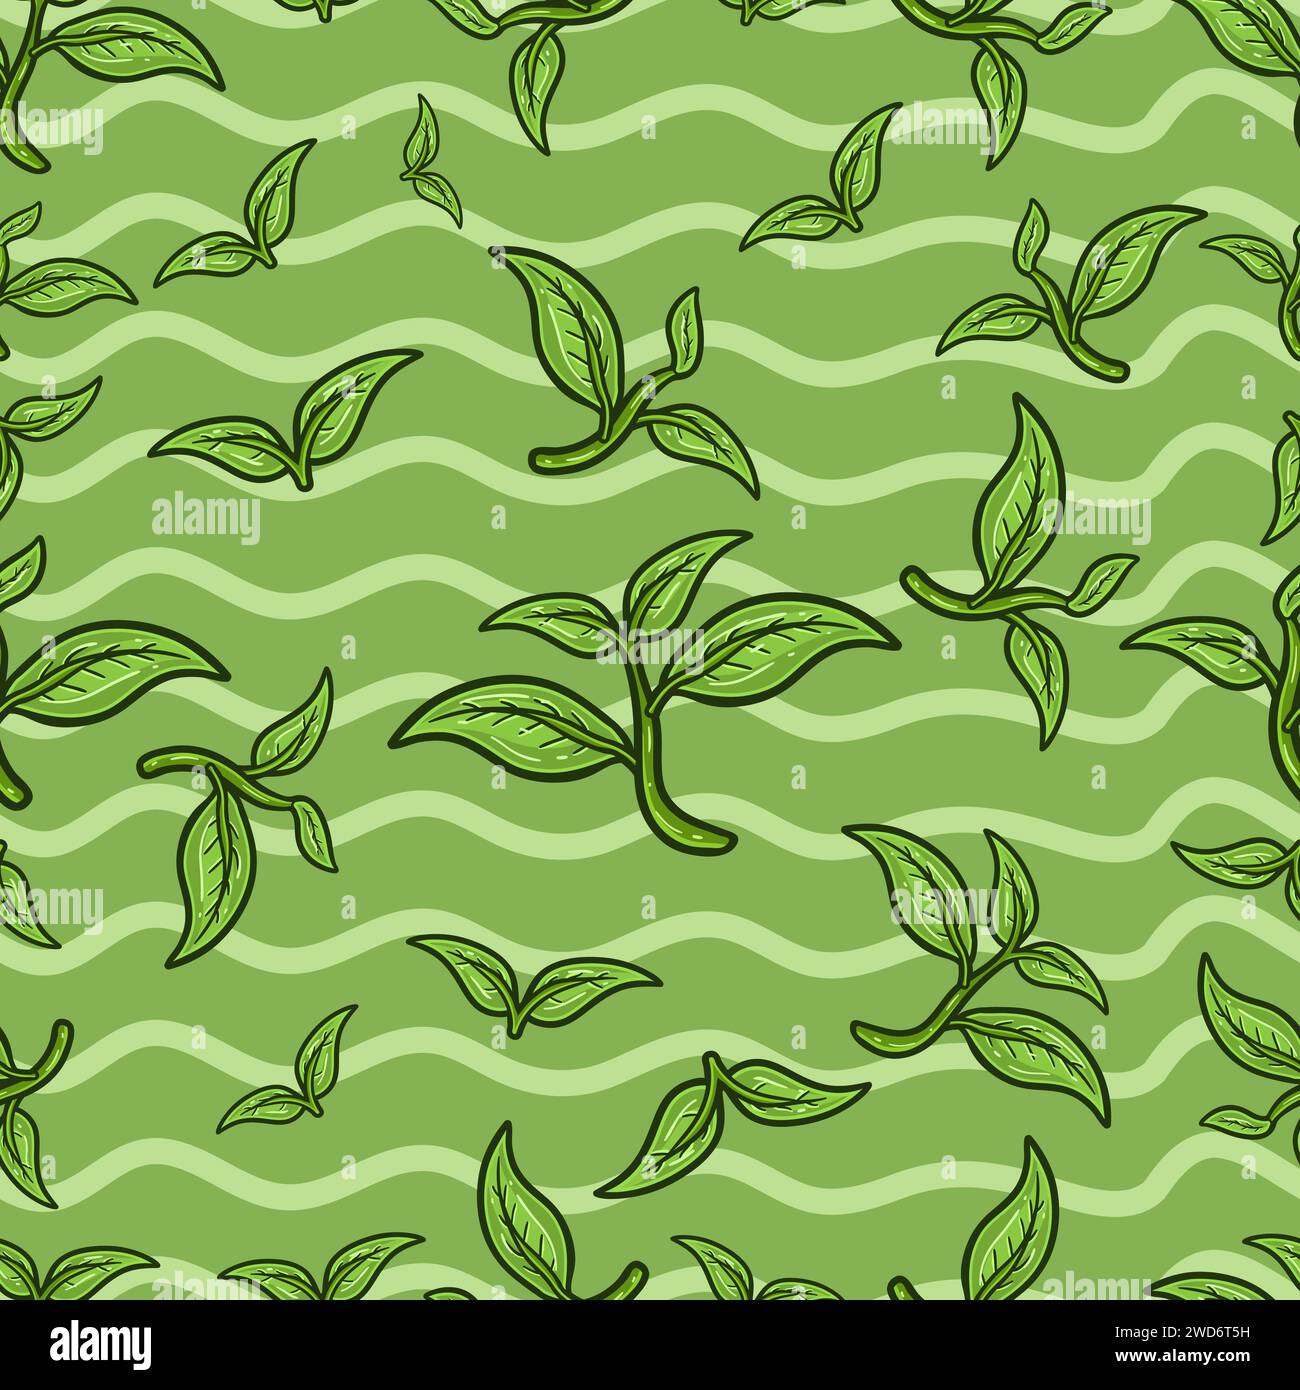 Nahtloses Teeblatt-Muster im Cartoon-Stil. Perfekt für Hintergrund-, Hintergrund-, Hintergrund- und Deckblattverpackungen. Vektorabbildung. Stock Vektor